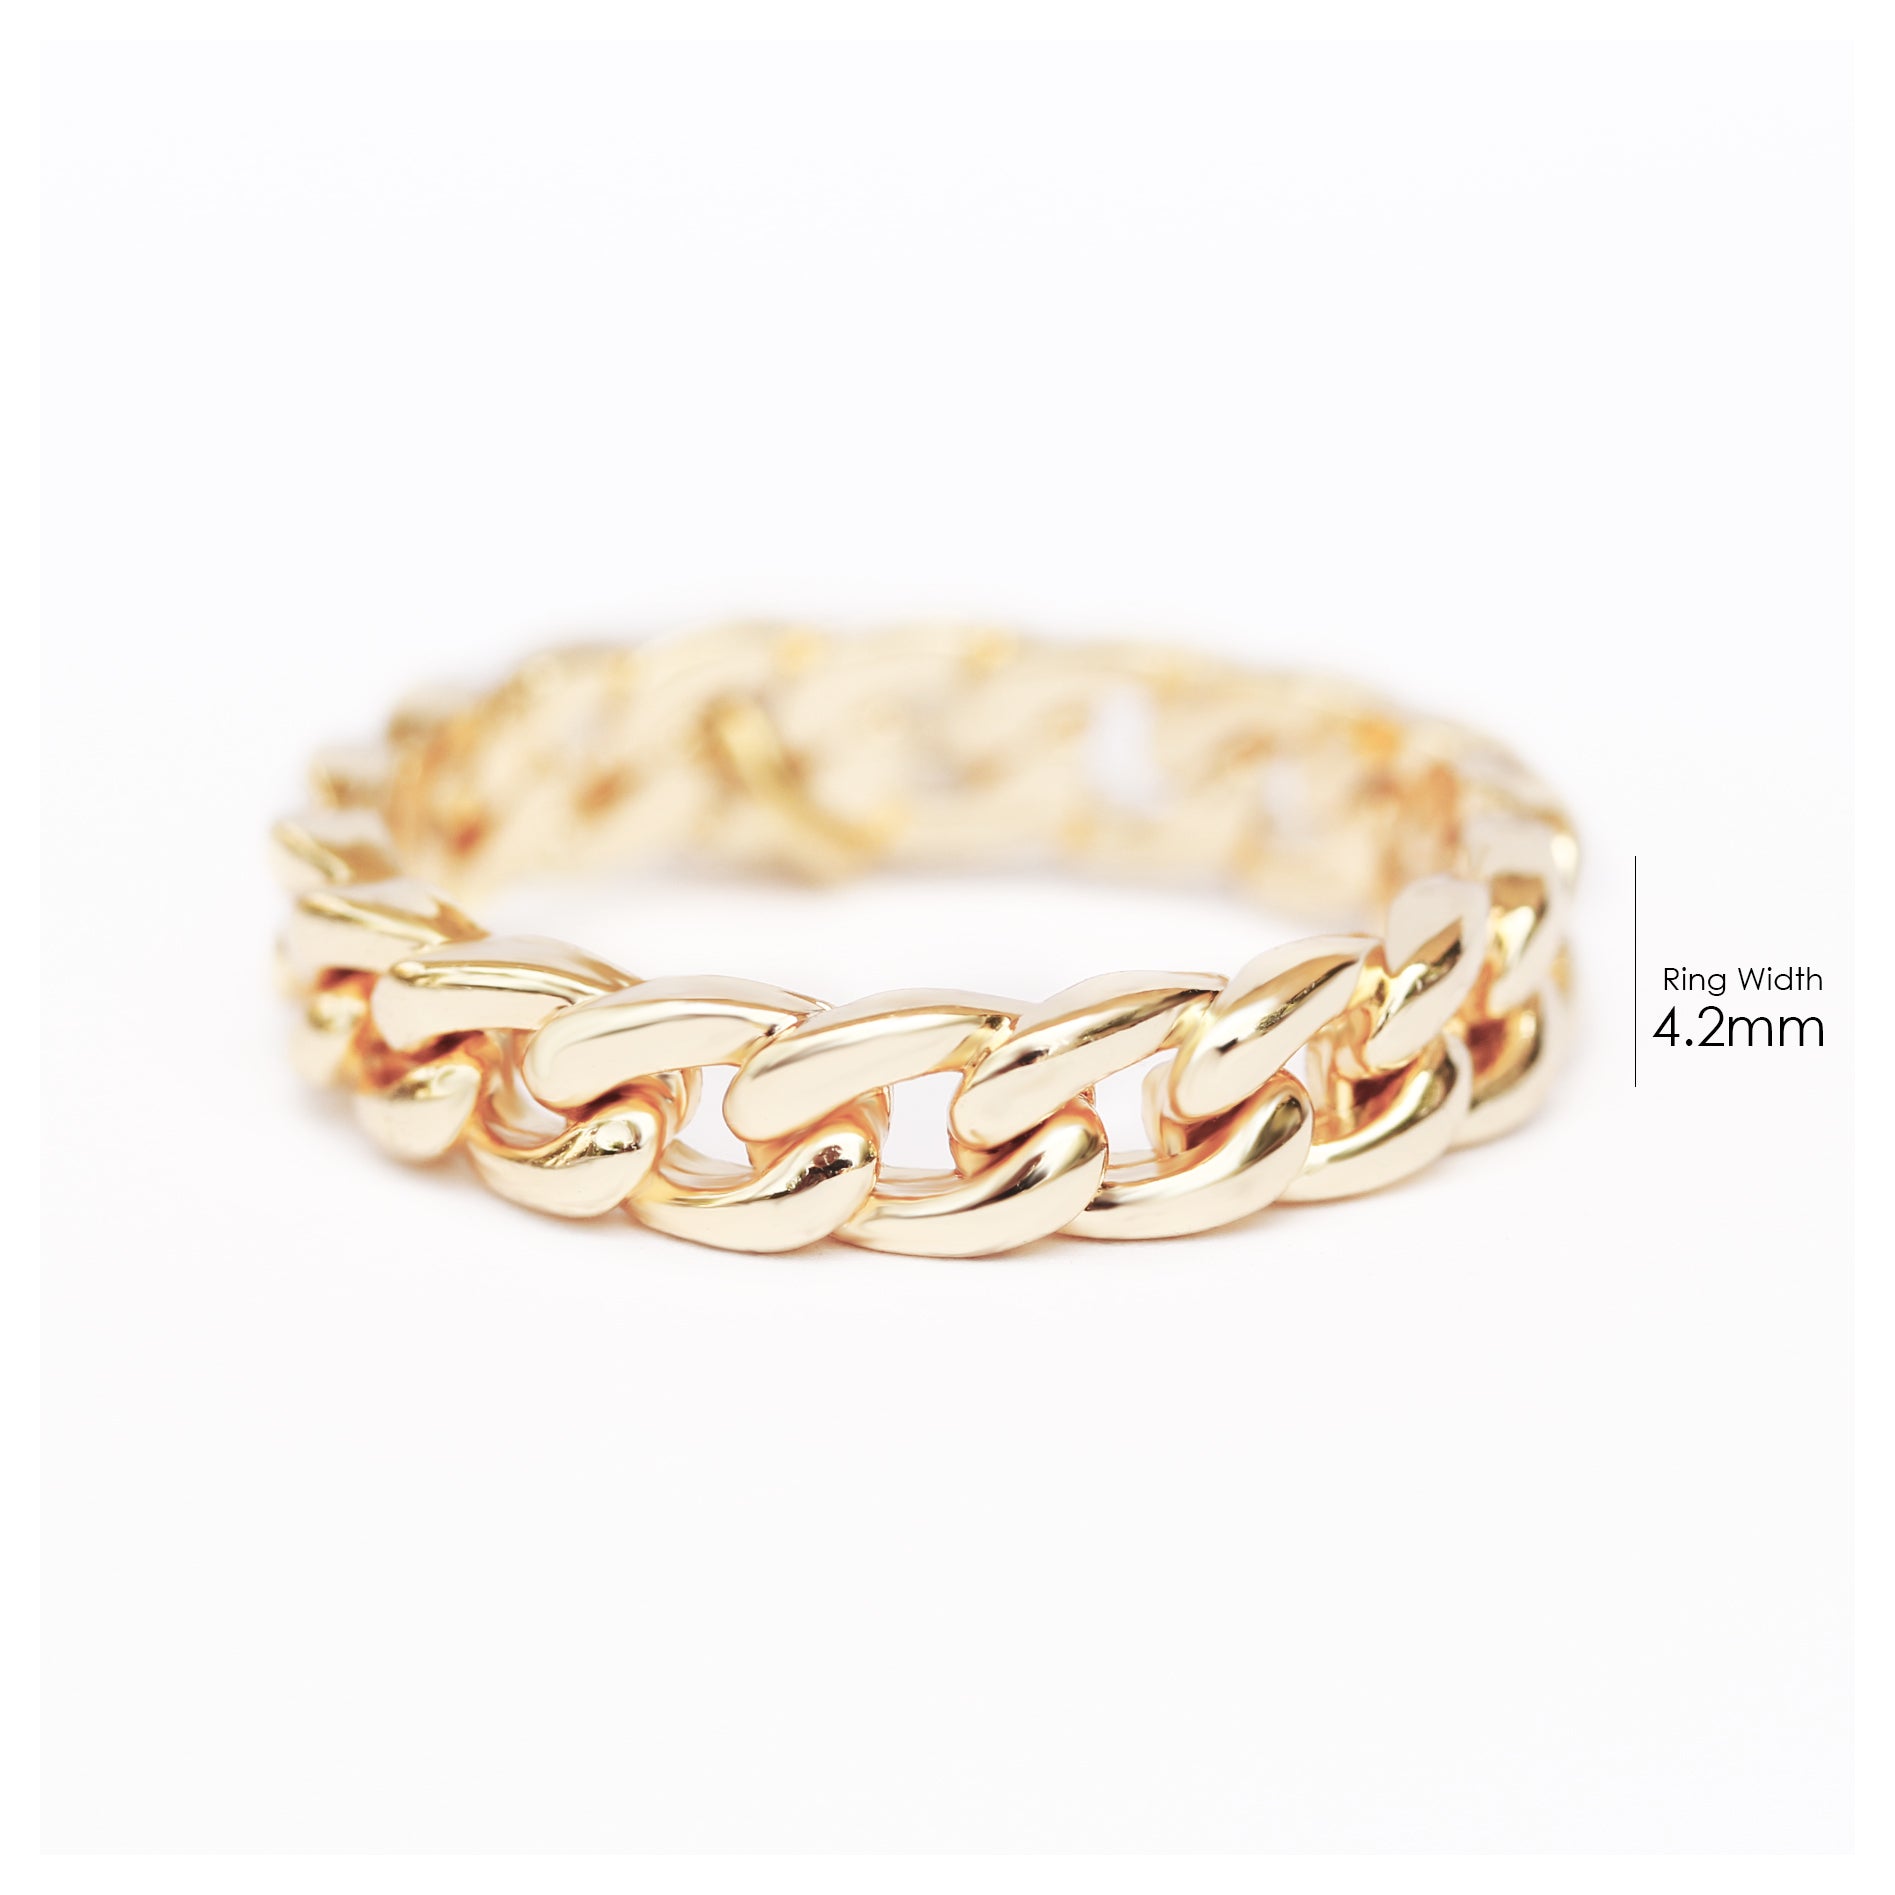 small chain wedding ring - sillyshinydiamonds